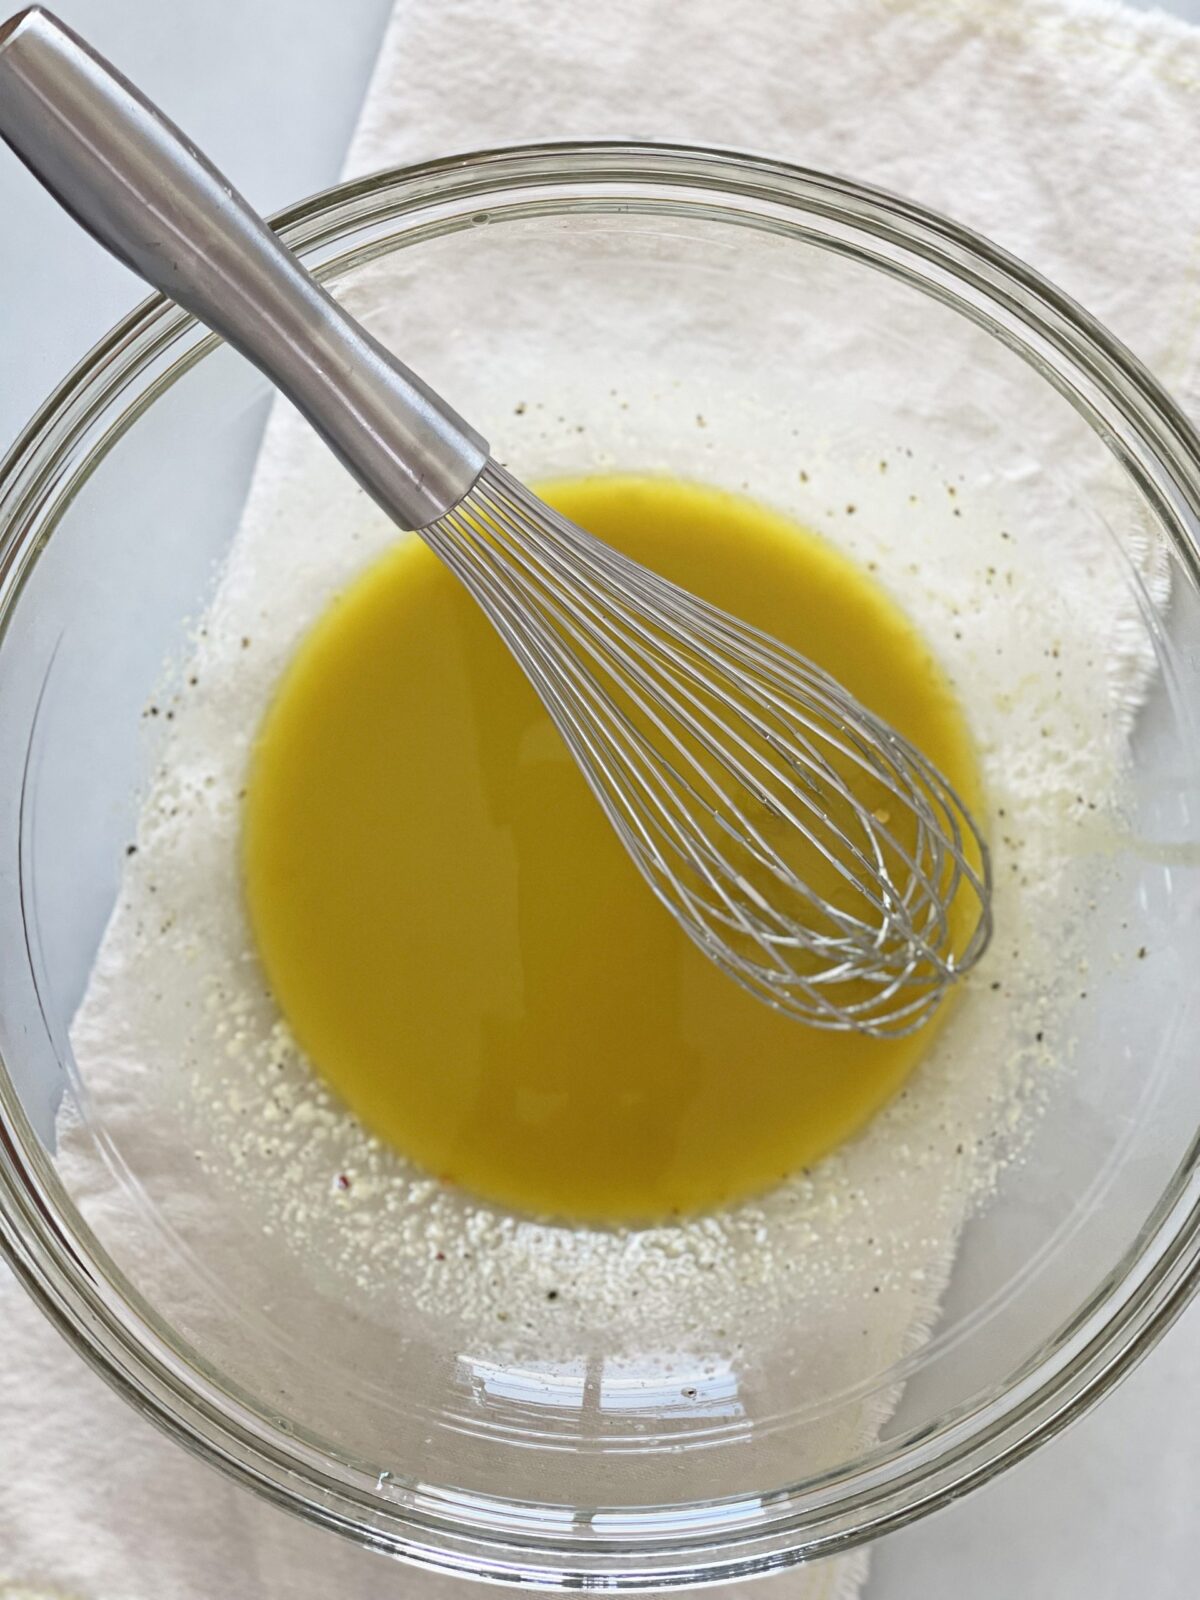 Lemon Lime Vinaigrette Recipe. Lemon, lime, Dijon mustard, and good olive oil is all you need for this recipe! Easy dressing recipe! www.ChopHapy.com #vinaigretterecipe #saladdresing